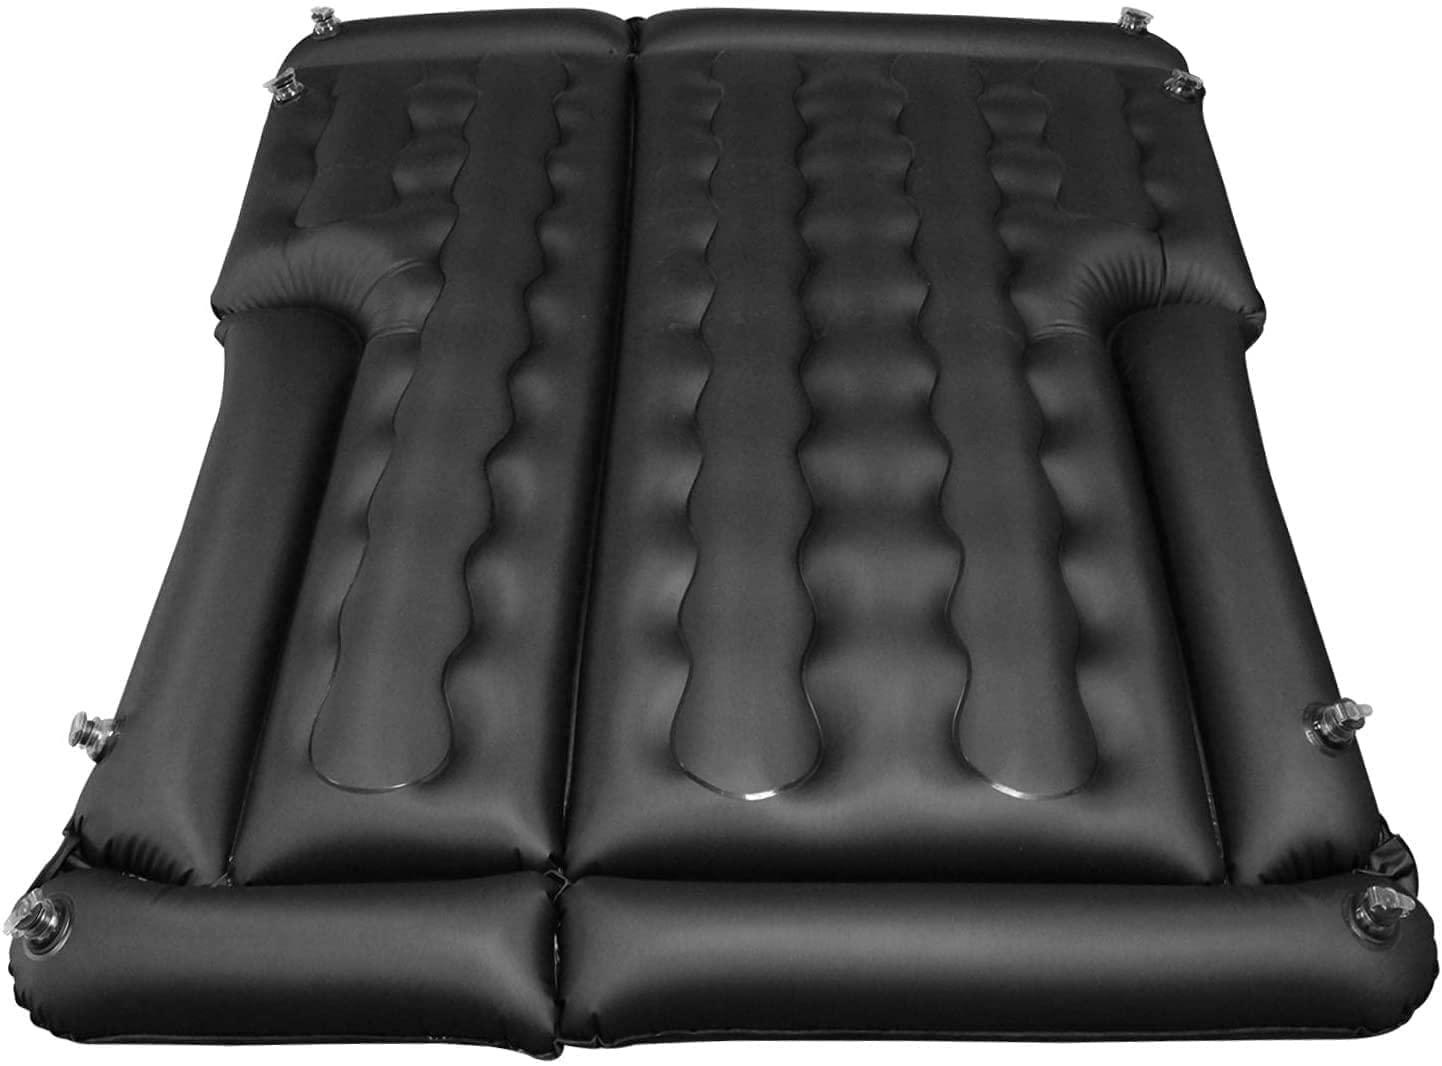 fbsport bed car mattress